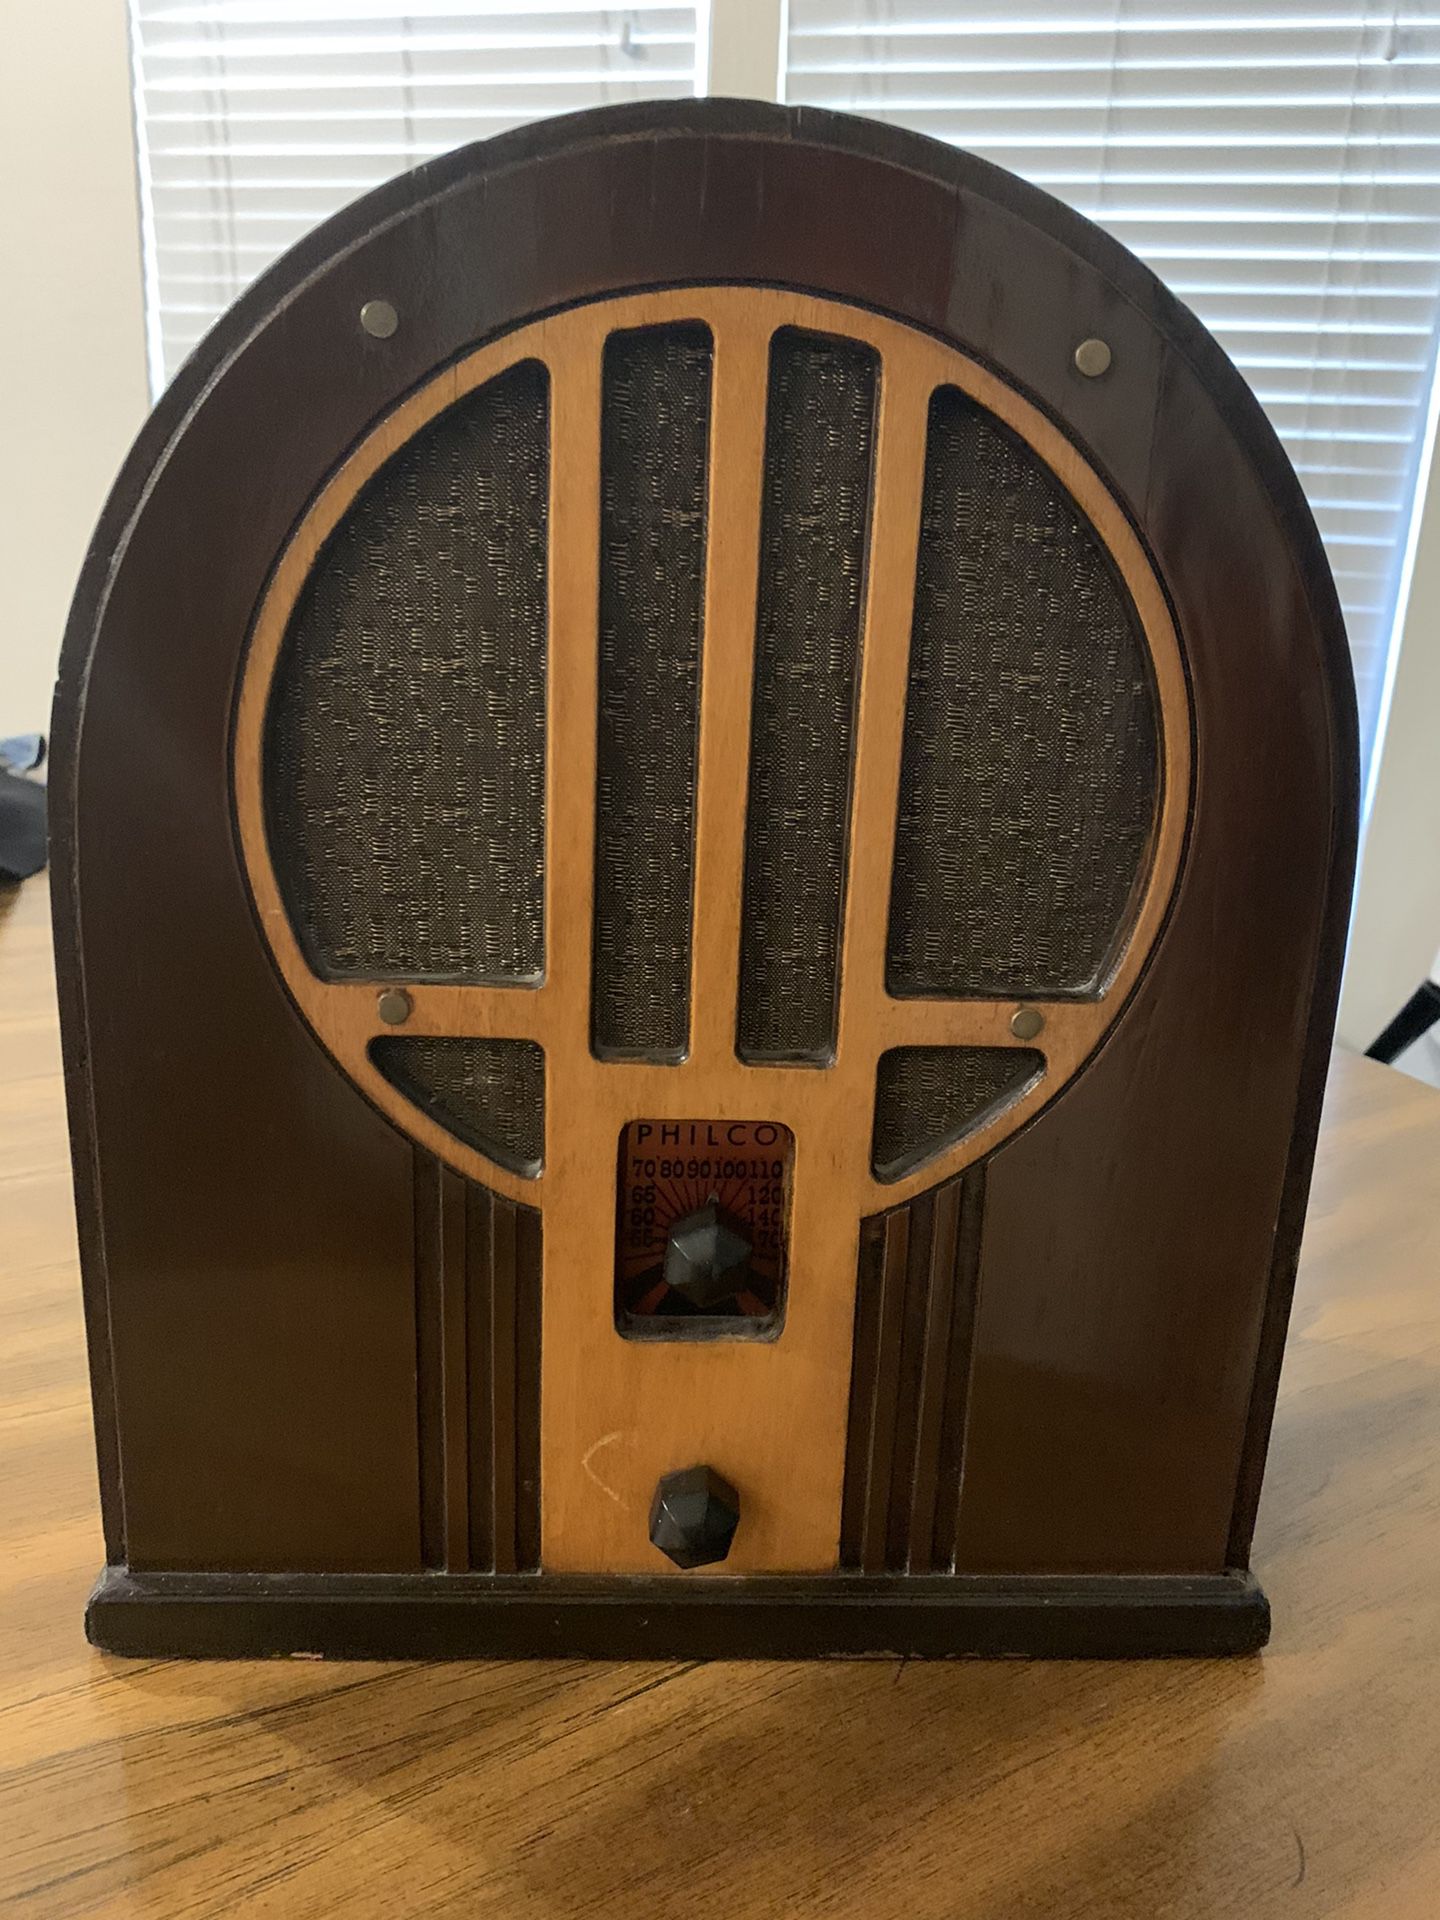 Unique Philco radio.